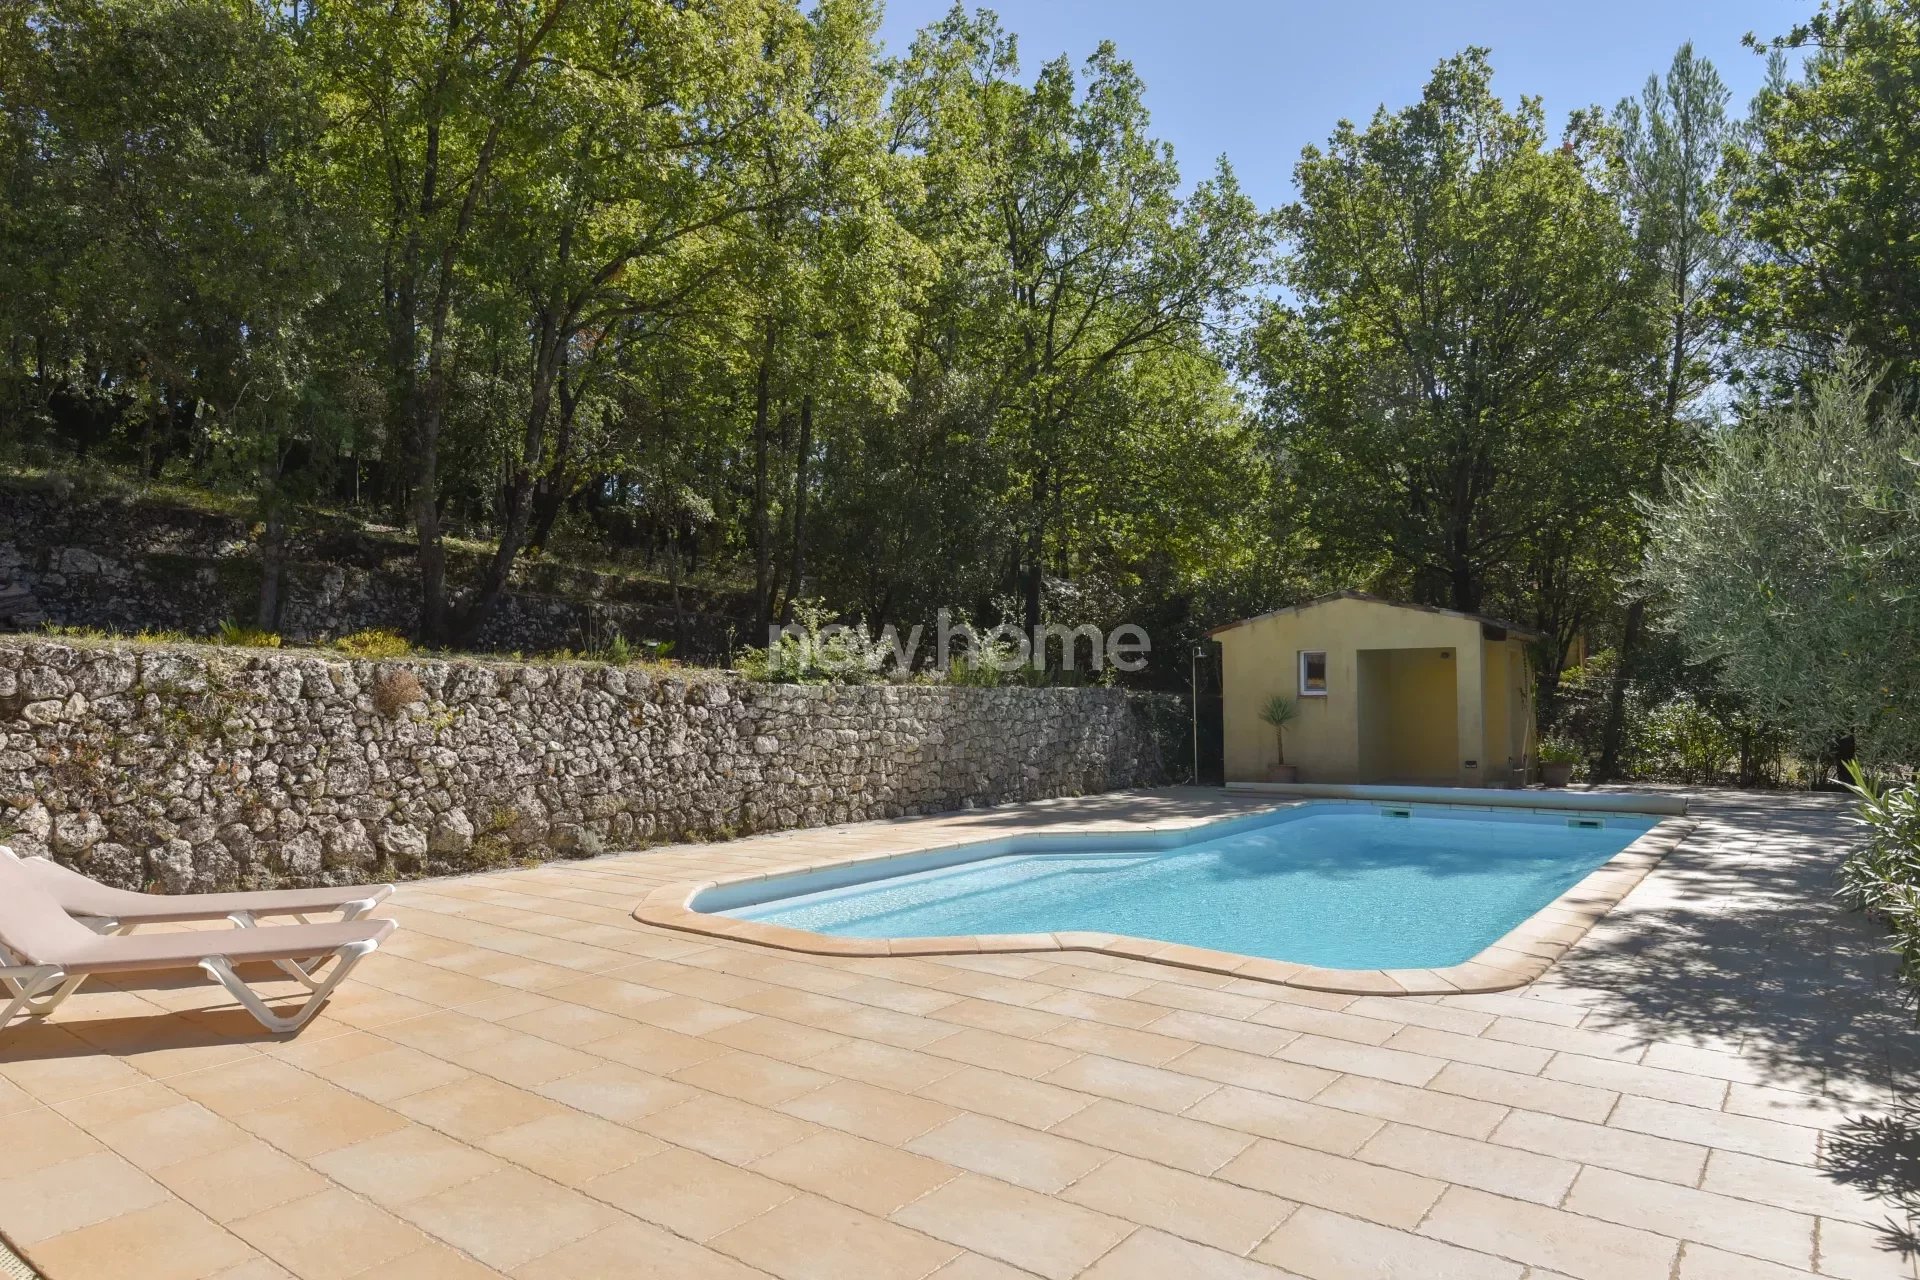 Prachtige, ruime villa in goede staat met verwarmd zwembad.